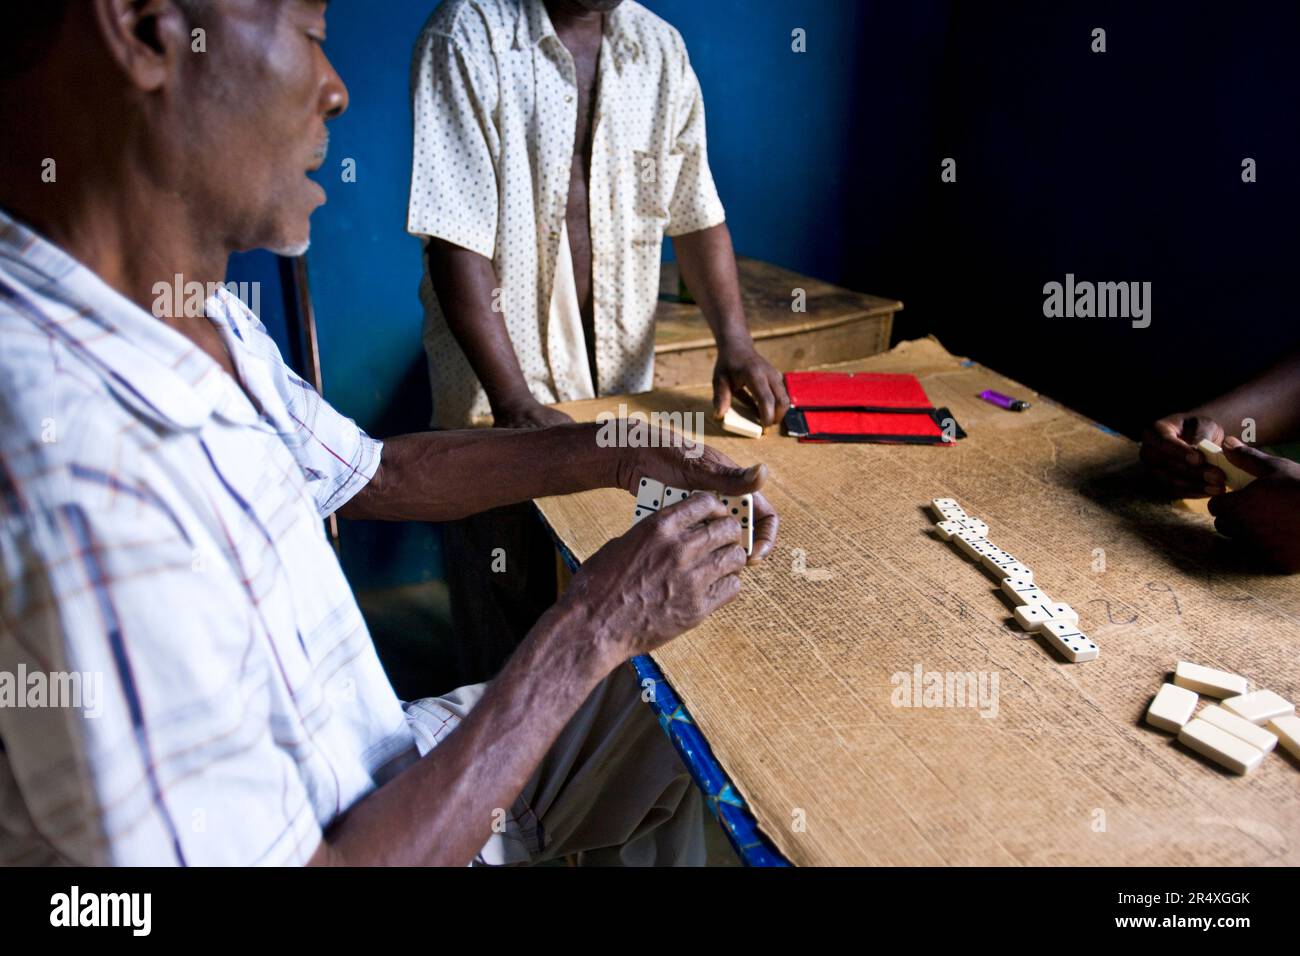 Gli uomini giocano a domino su una superficie di cartone: Flagstaff, Giamaica, Indie occidentali Foto Stock